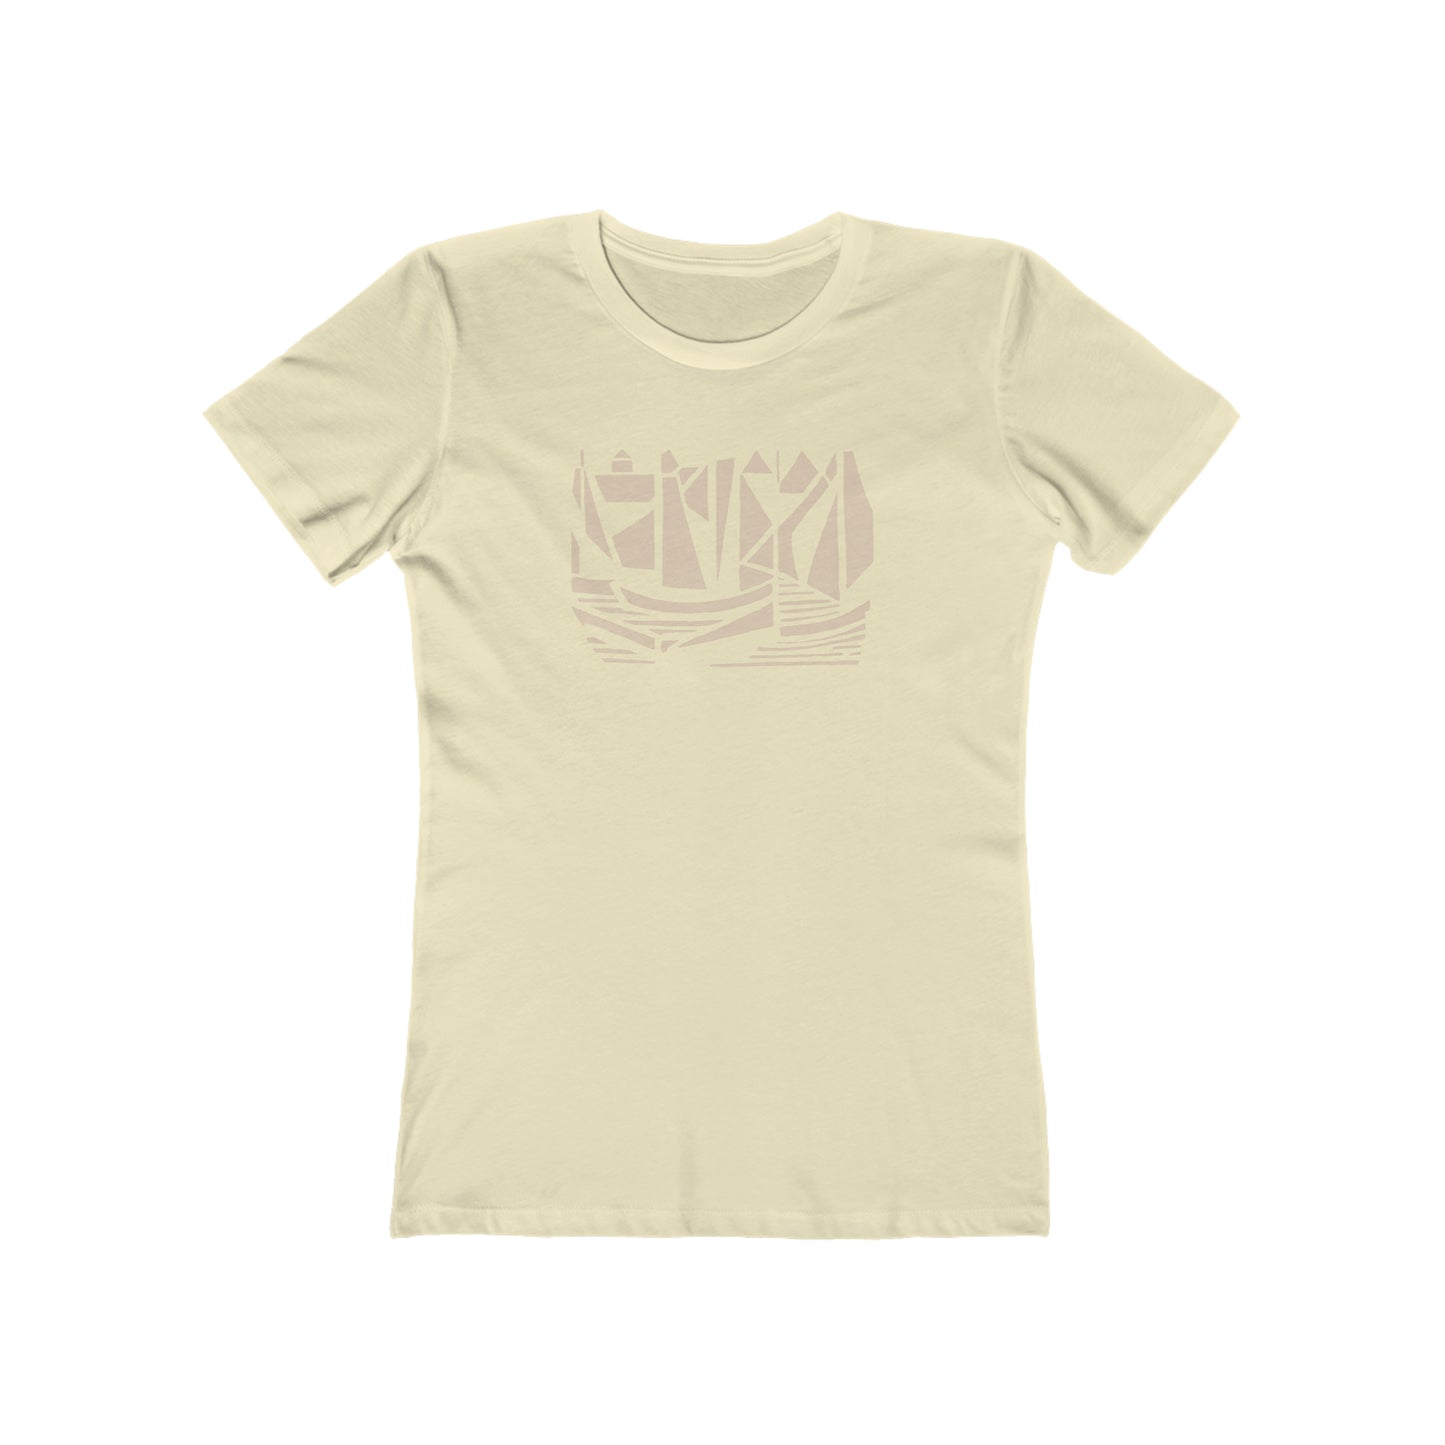 Boats - Women's T-Shirt